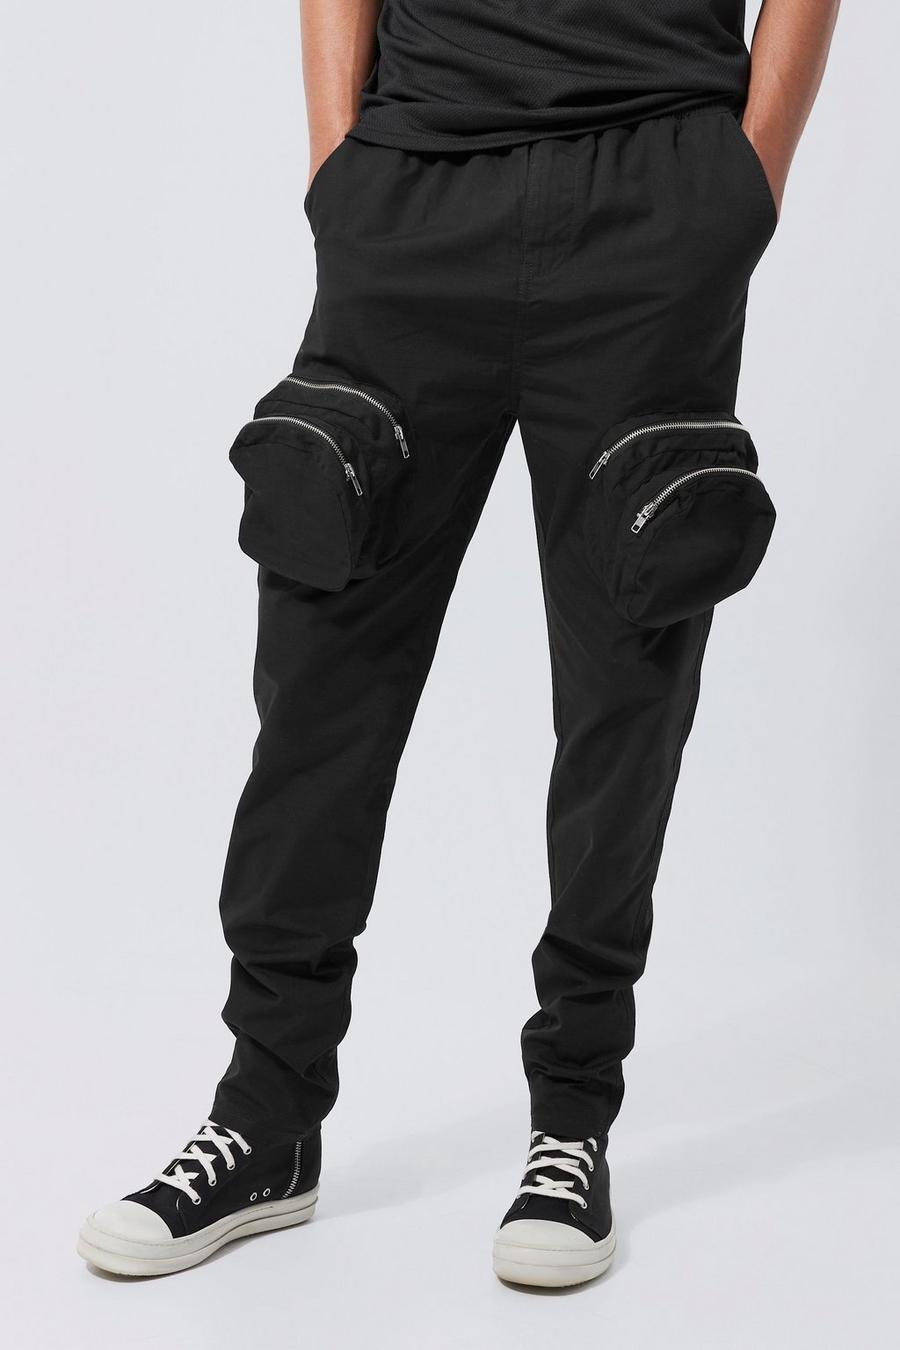 Pantaloni Smart Tall Slim Fit con tasche Cargo in rilievo e zip, Black negro